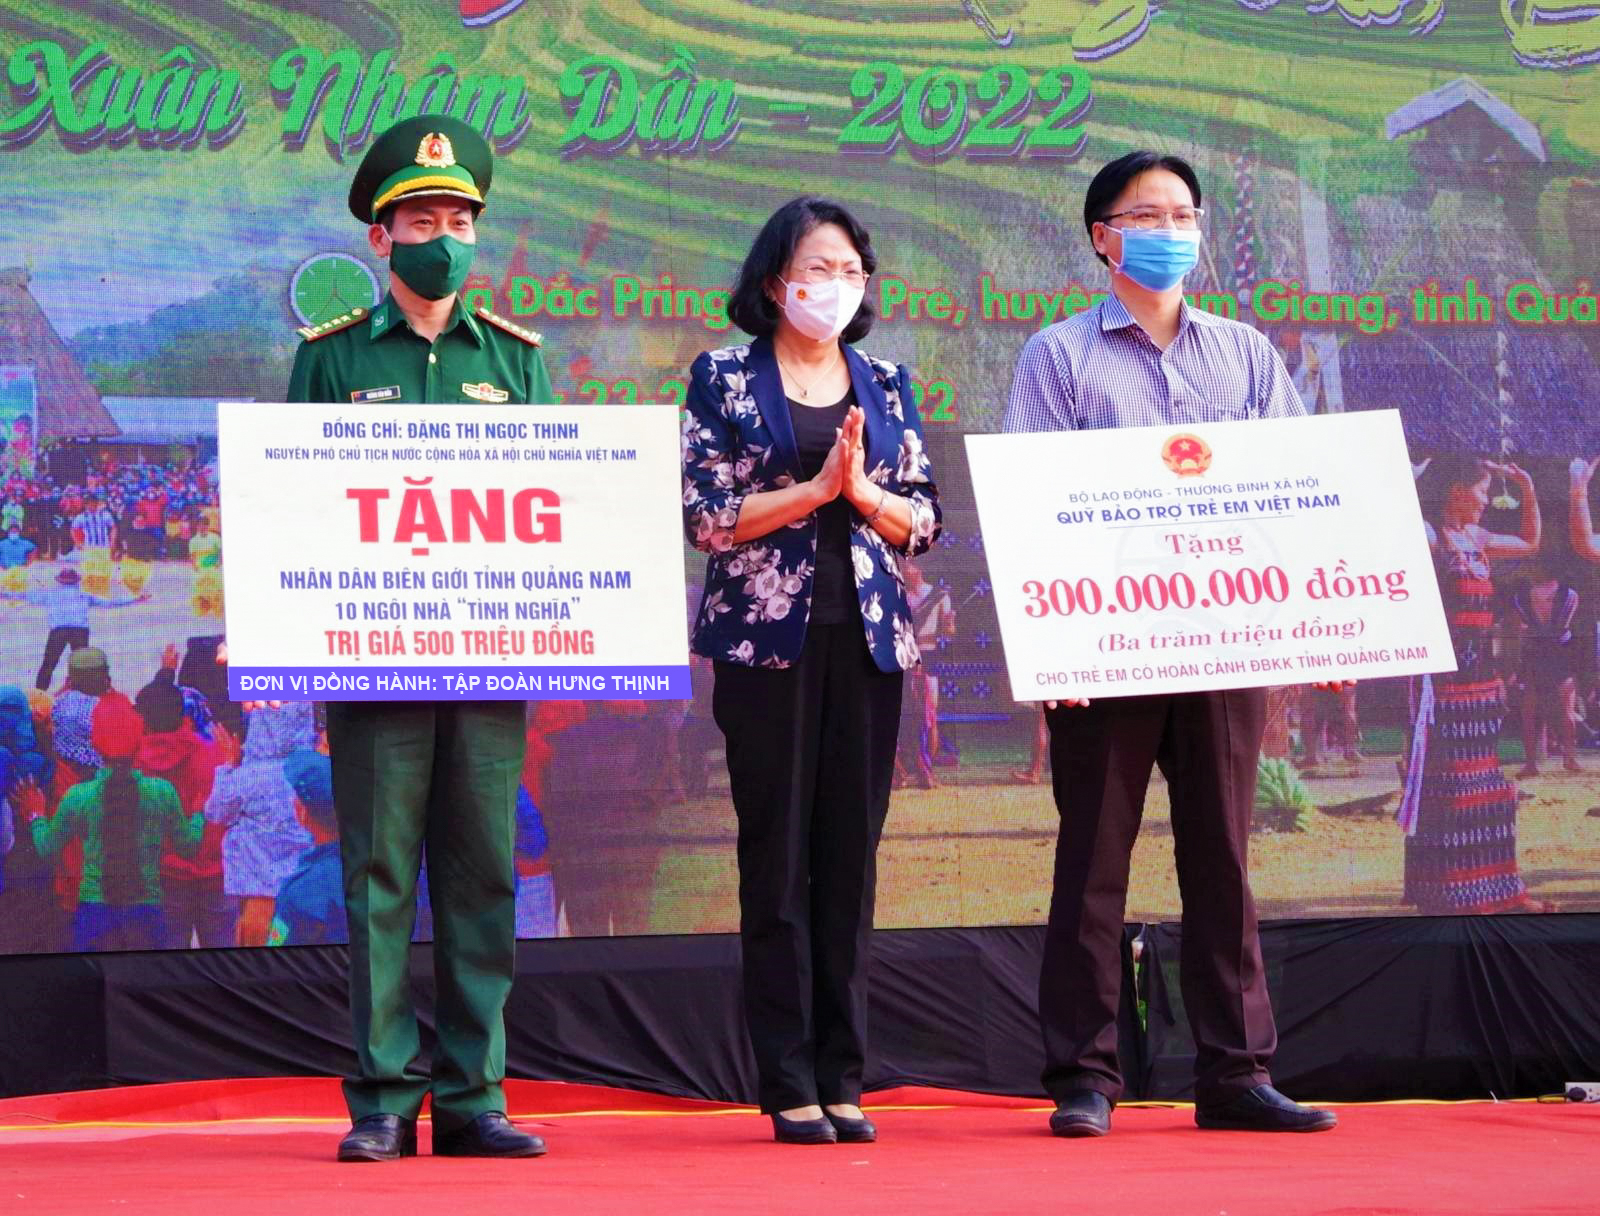 Tập đoàn Hưng Thịnh trao tặng 10 căn nhà tình nghĩa trị giá 500 triệu đồng cho bà con nghèo tại tỉnh Quảng Nam